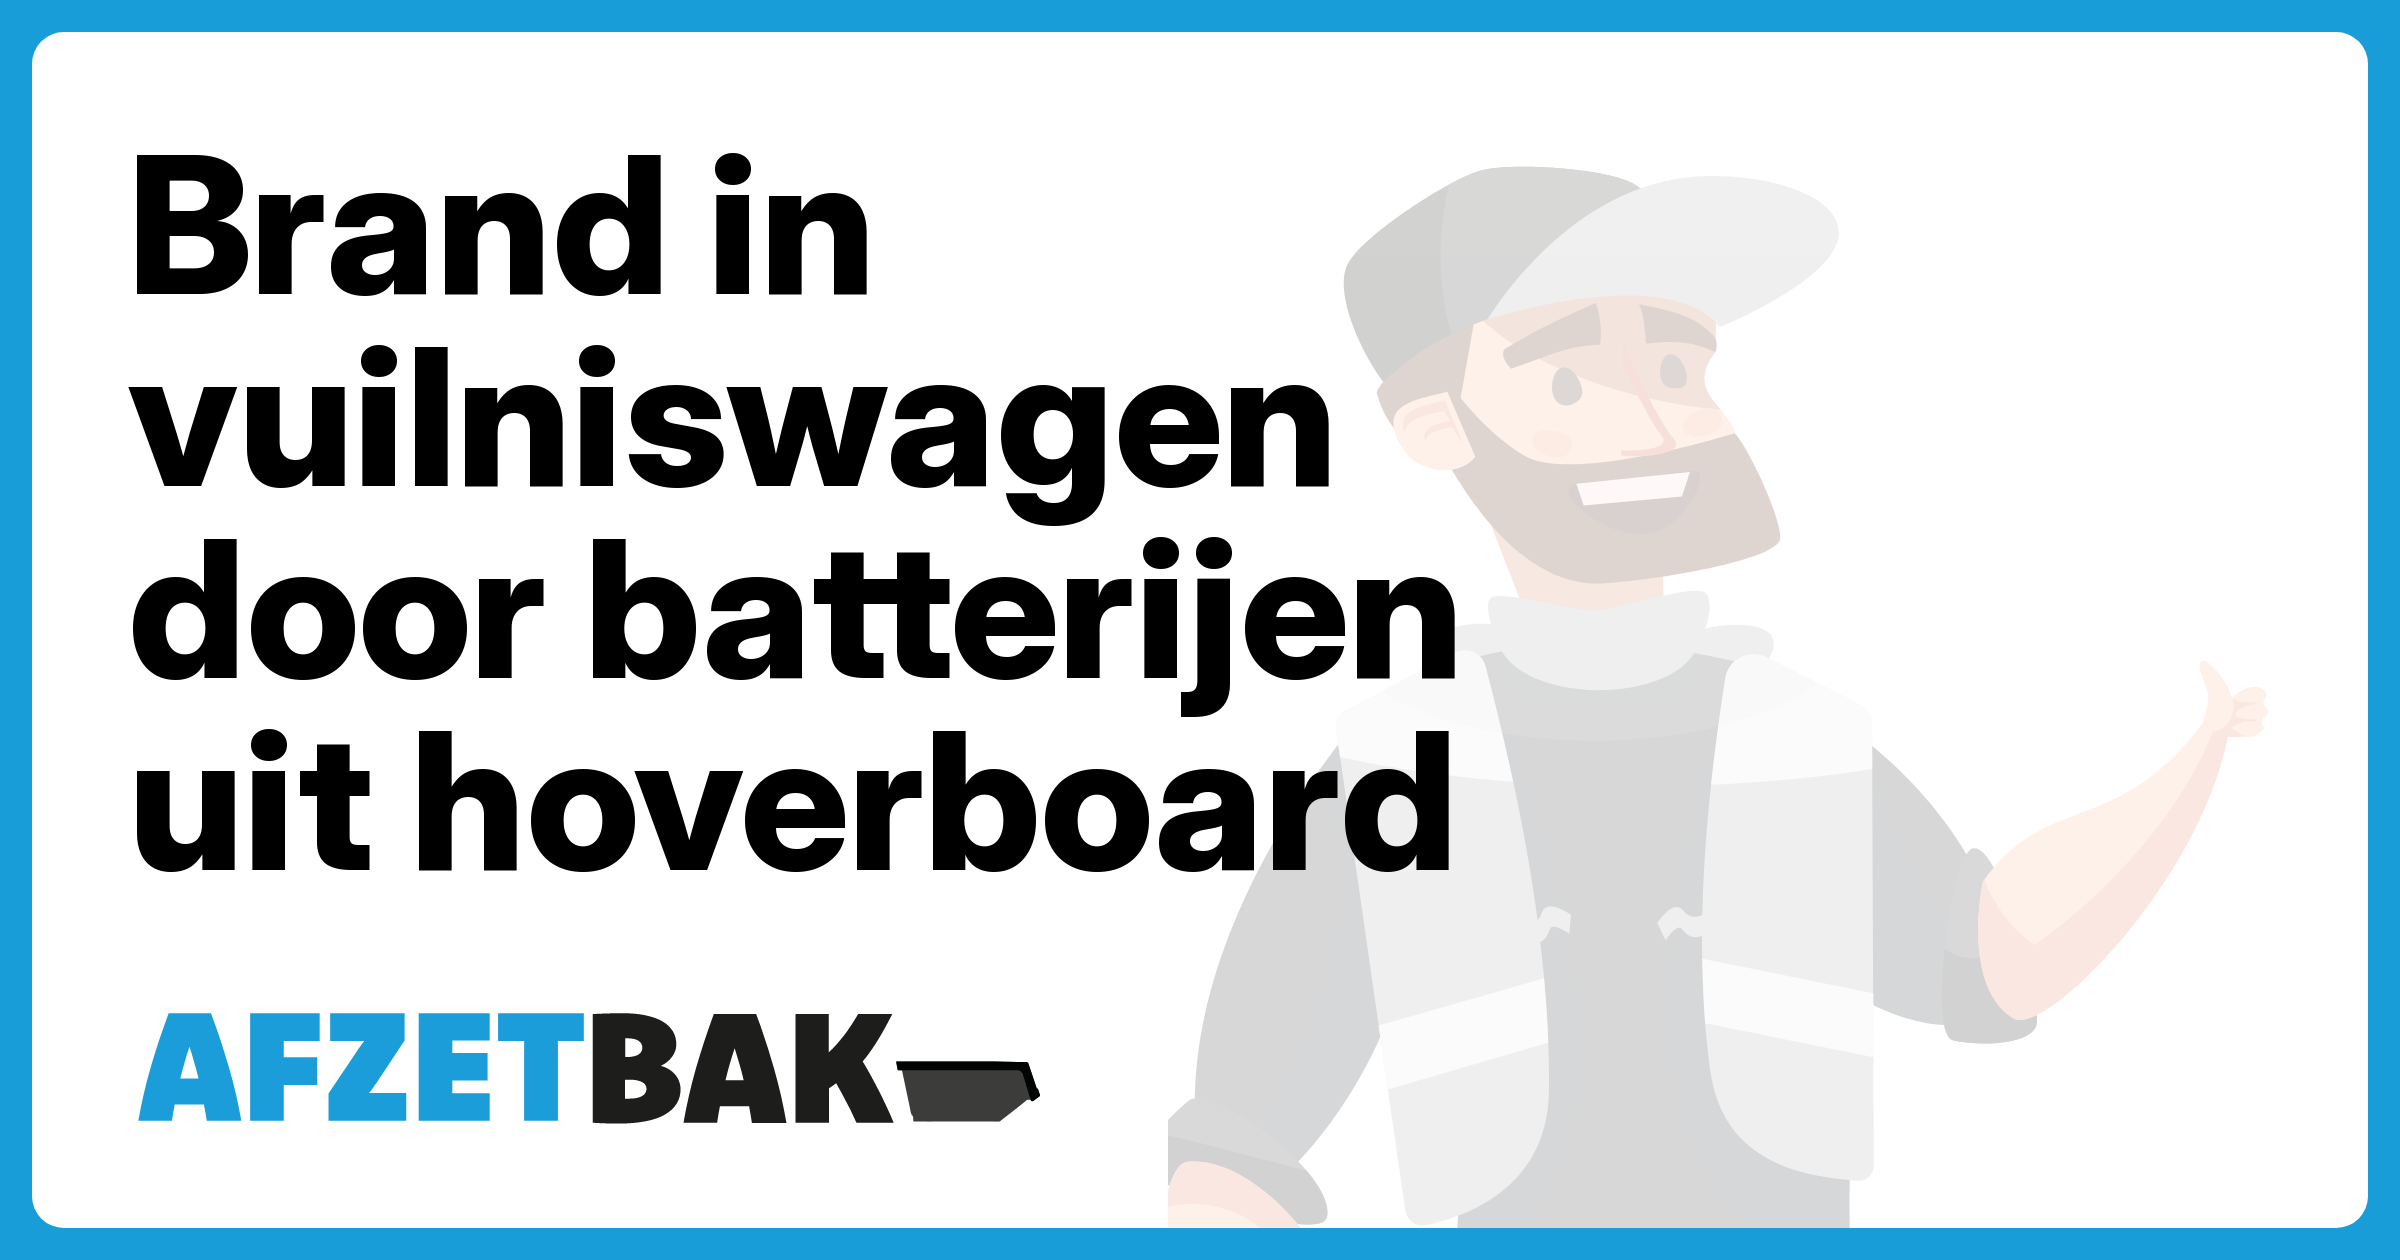 Brand in vuilniswagen door batterijen uit hoverboard - Afzetbak.nl